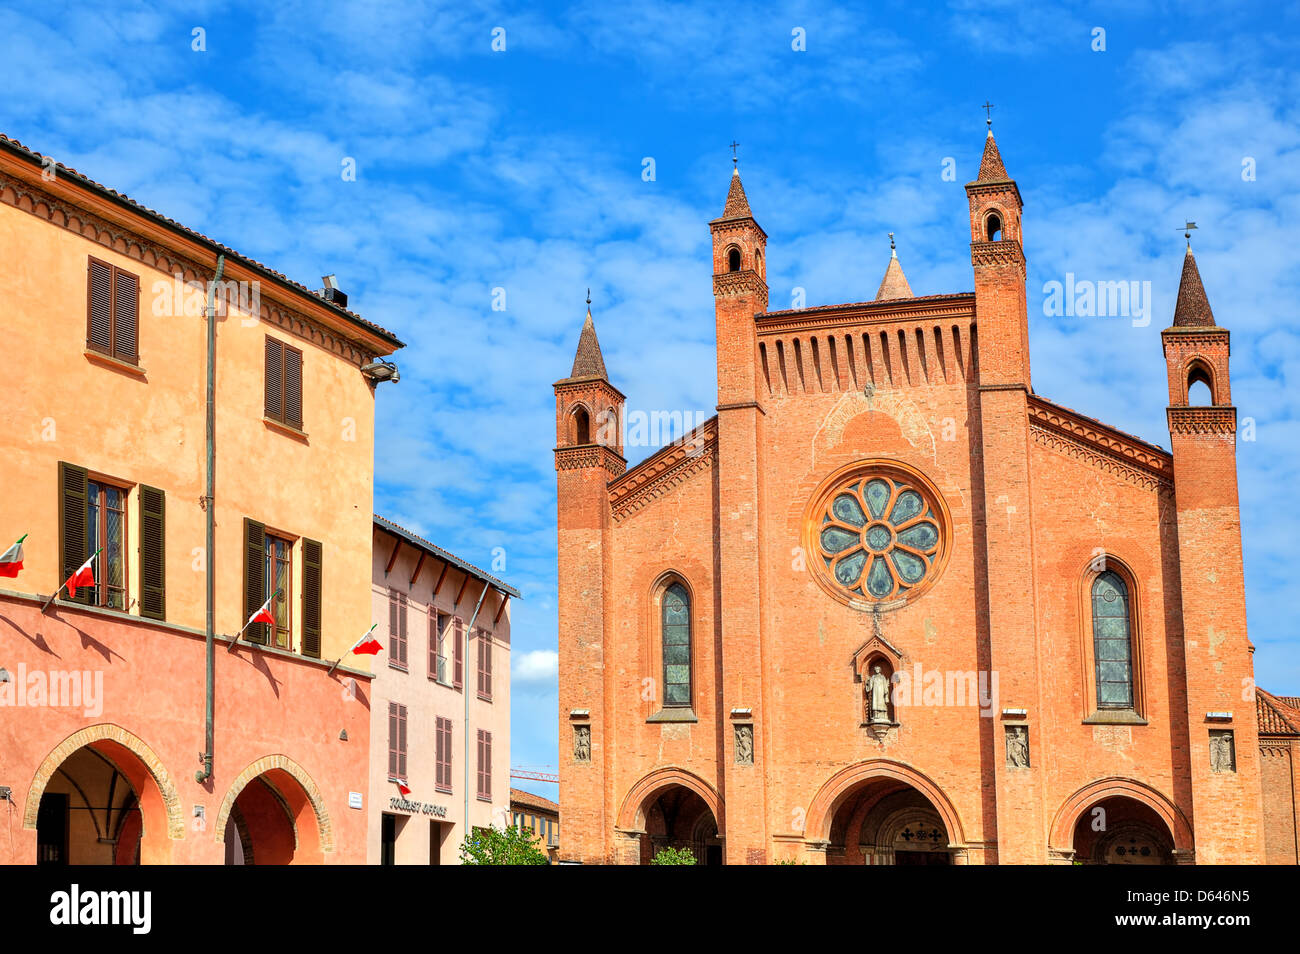 Vista del palazzo municipale e San Lorenzo (Duomo) cattedrale sotto il cielo blu con nuvole bianche nella città di Alba in Piemonte, Italia Foto Stock